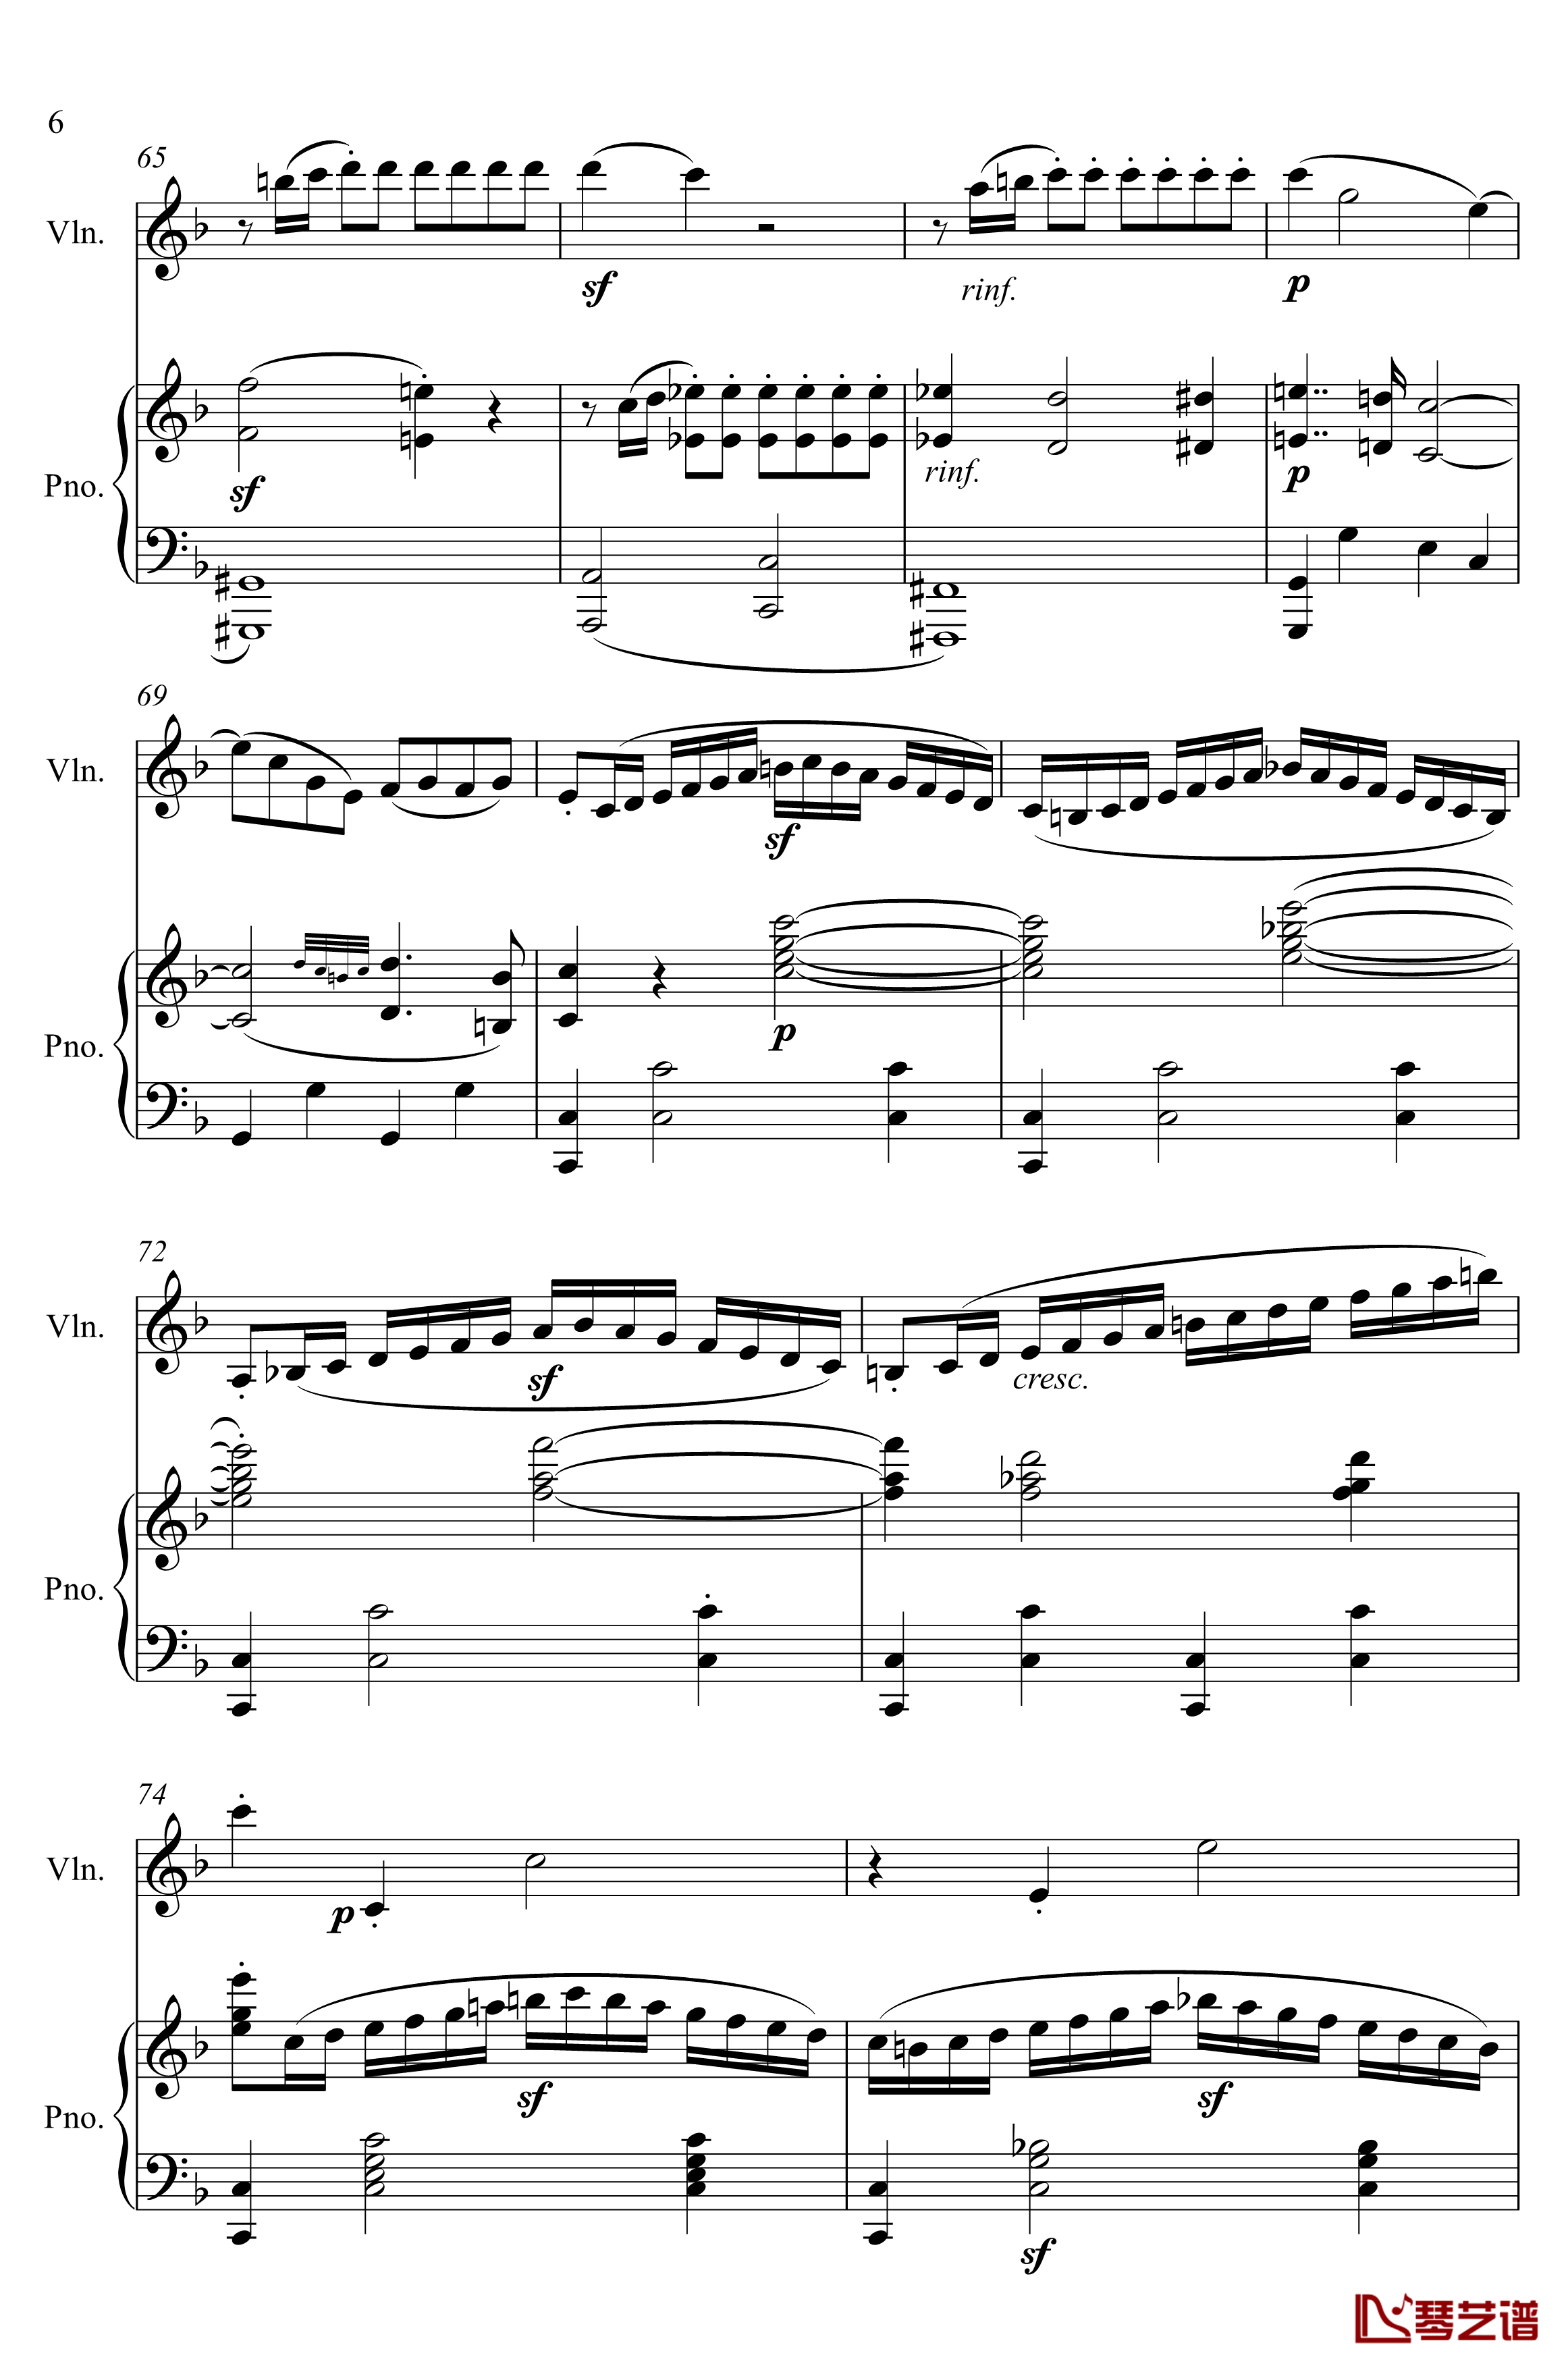 第5小提琴与钢琴奏鸣曲钢琴谱-第一乐章钢琴谱-贝多芬-beethoven6